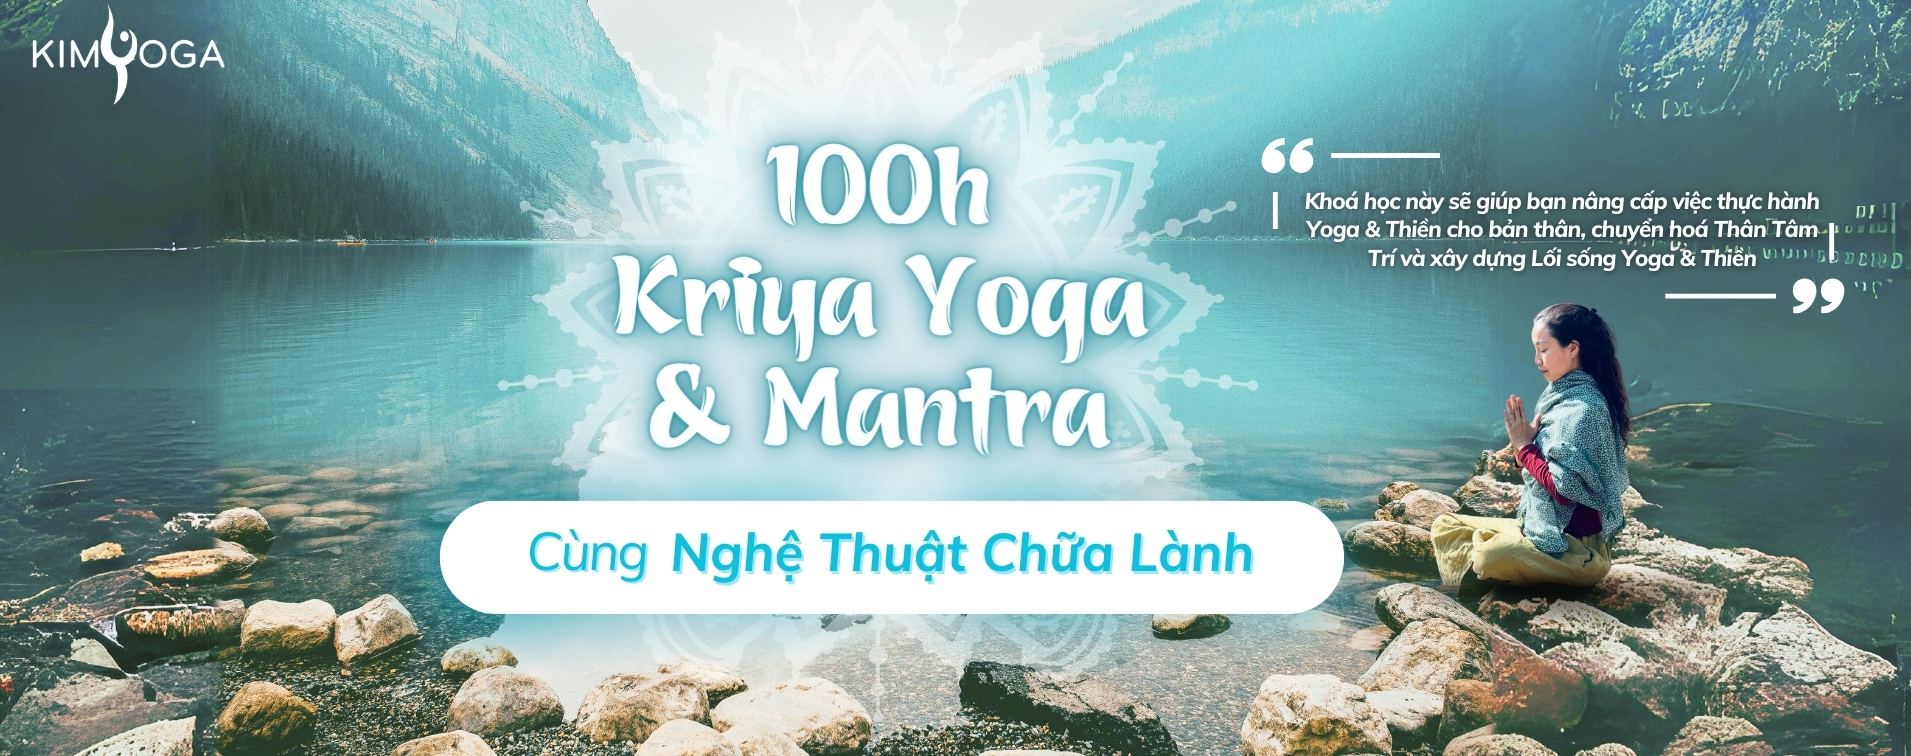 100h kriya yoga va mantra kimyoga